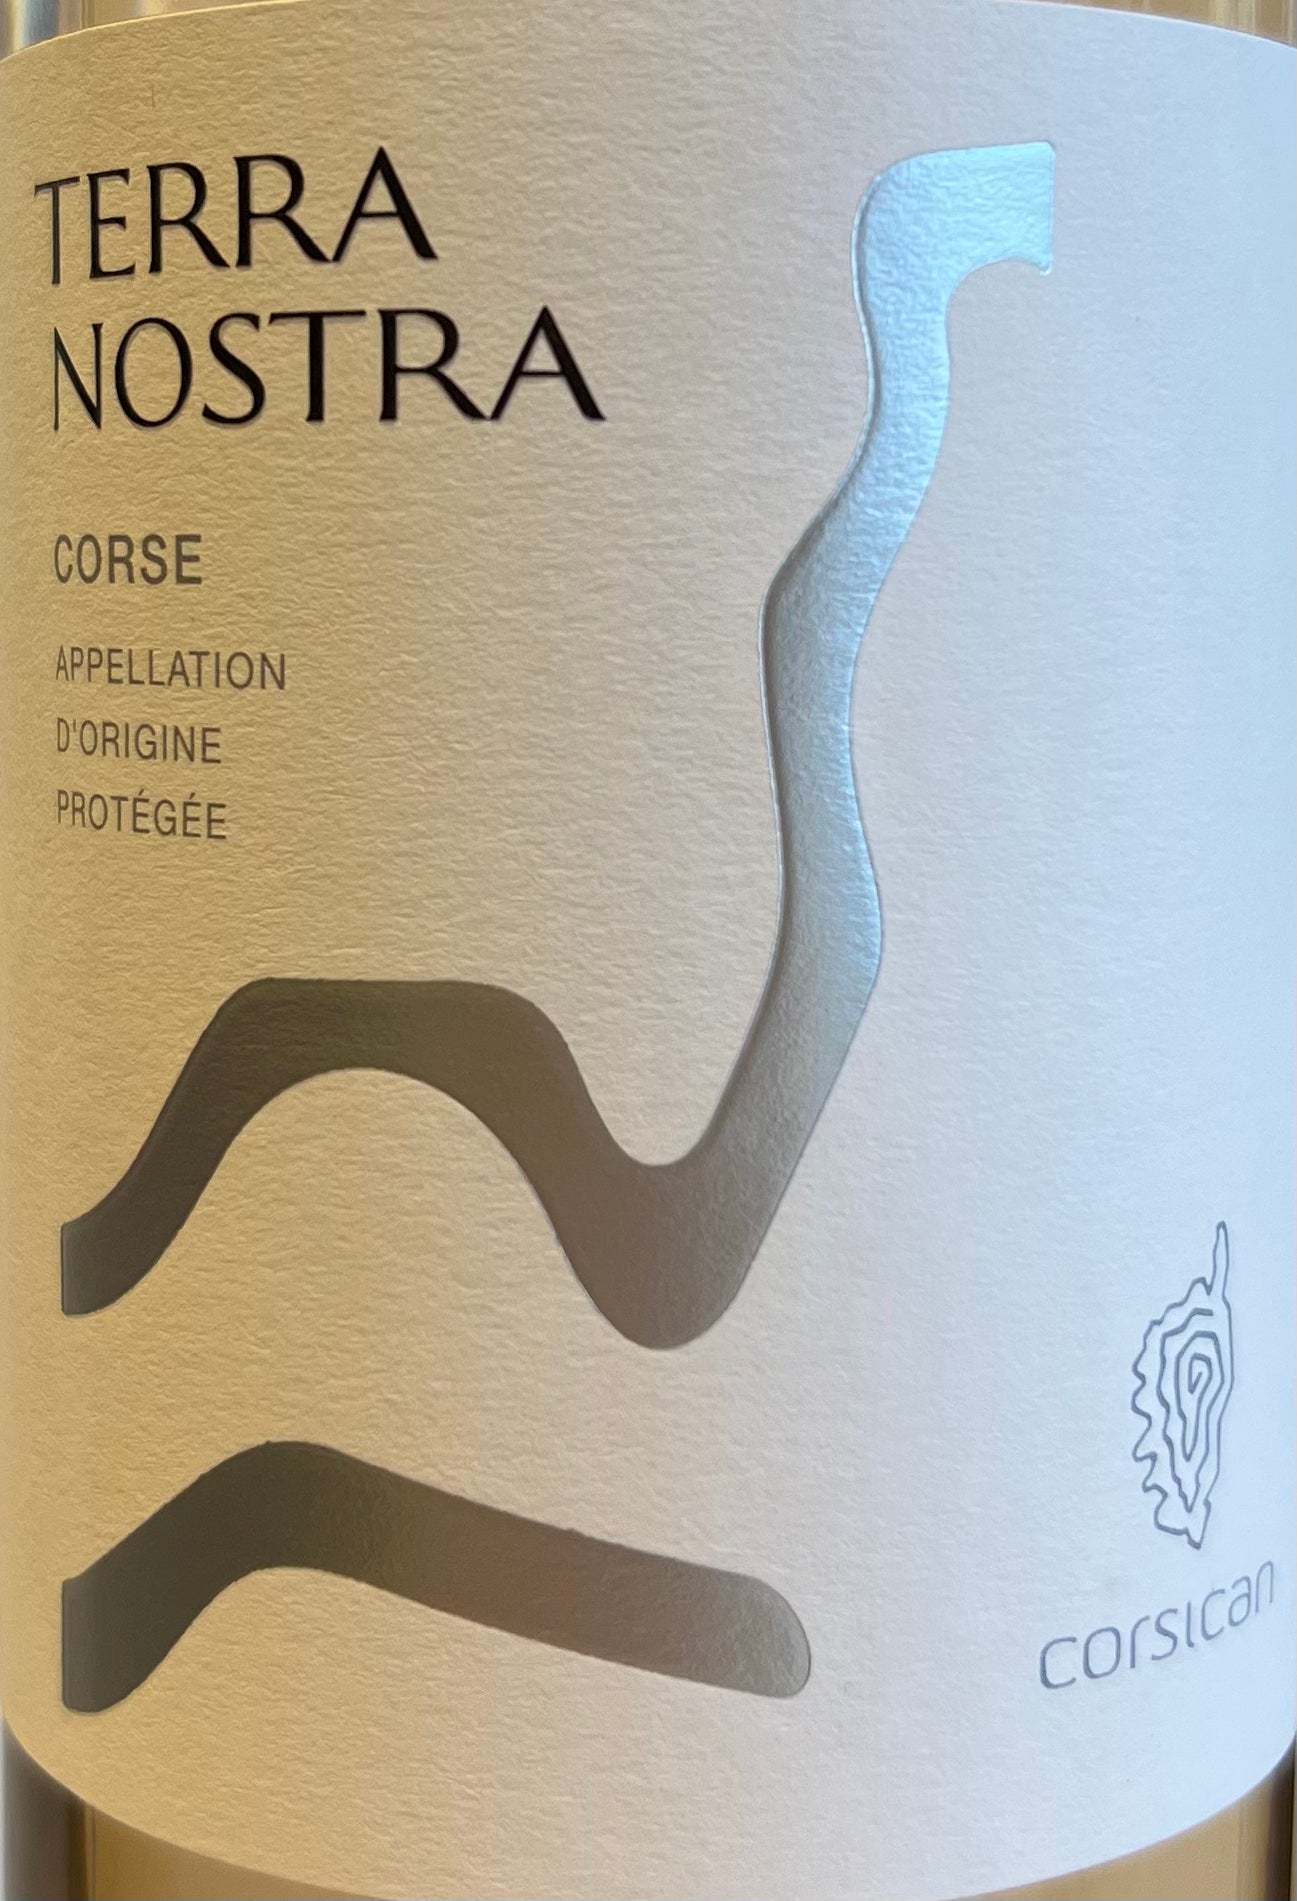 Terra Nostra 'Corse' - Corsica Rose